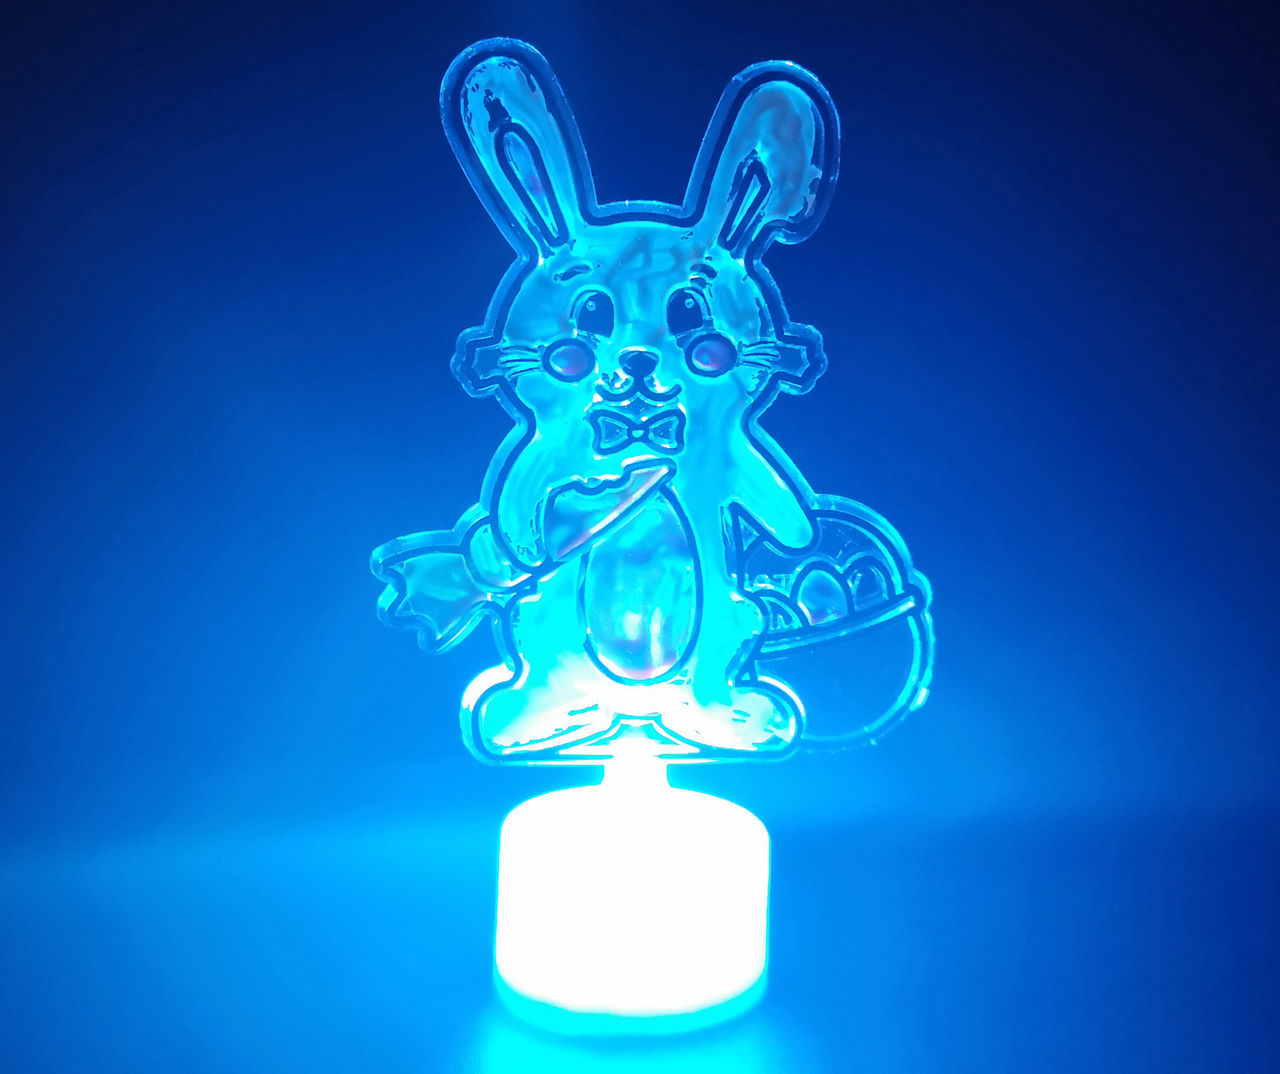 Bunny & Basket Light-Up Suncatcher Paint Kit